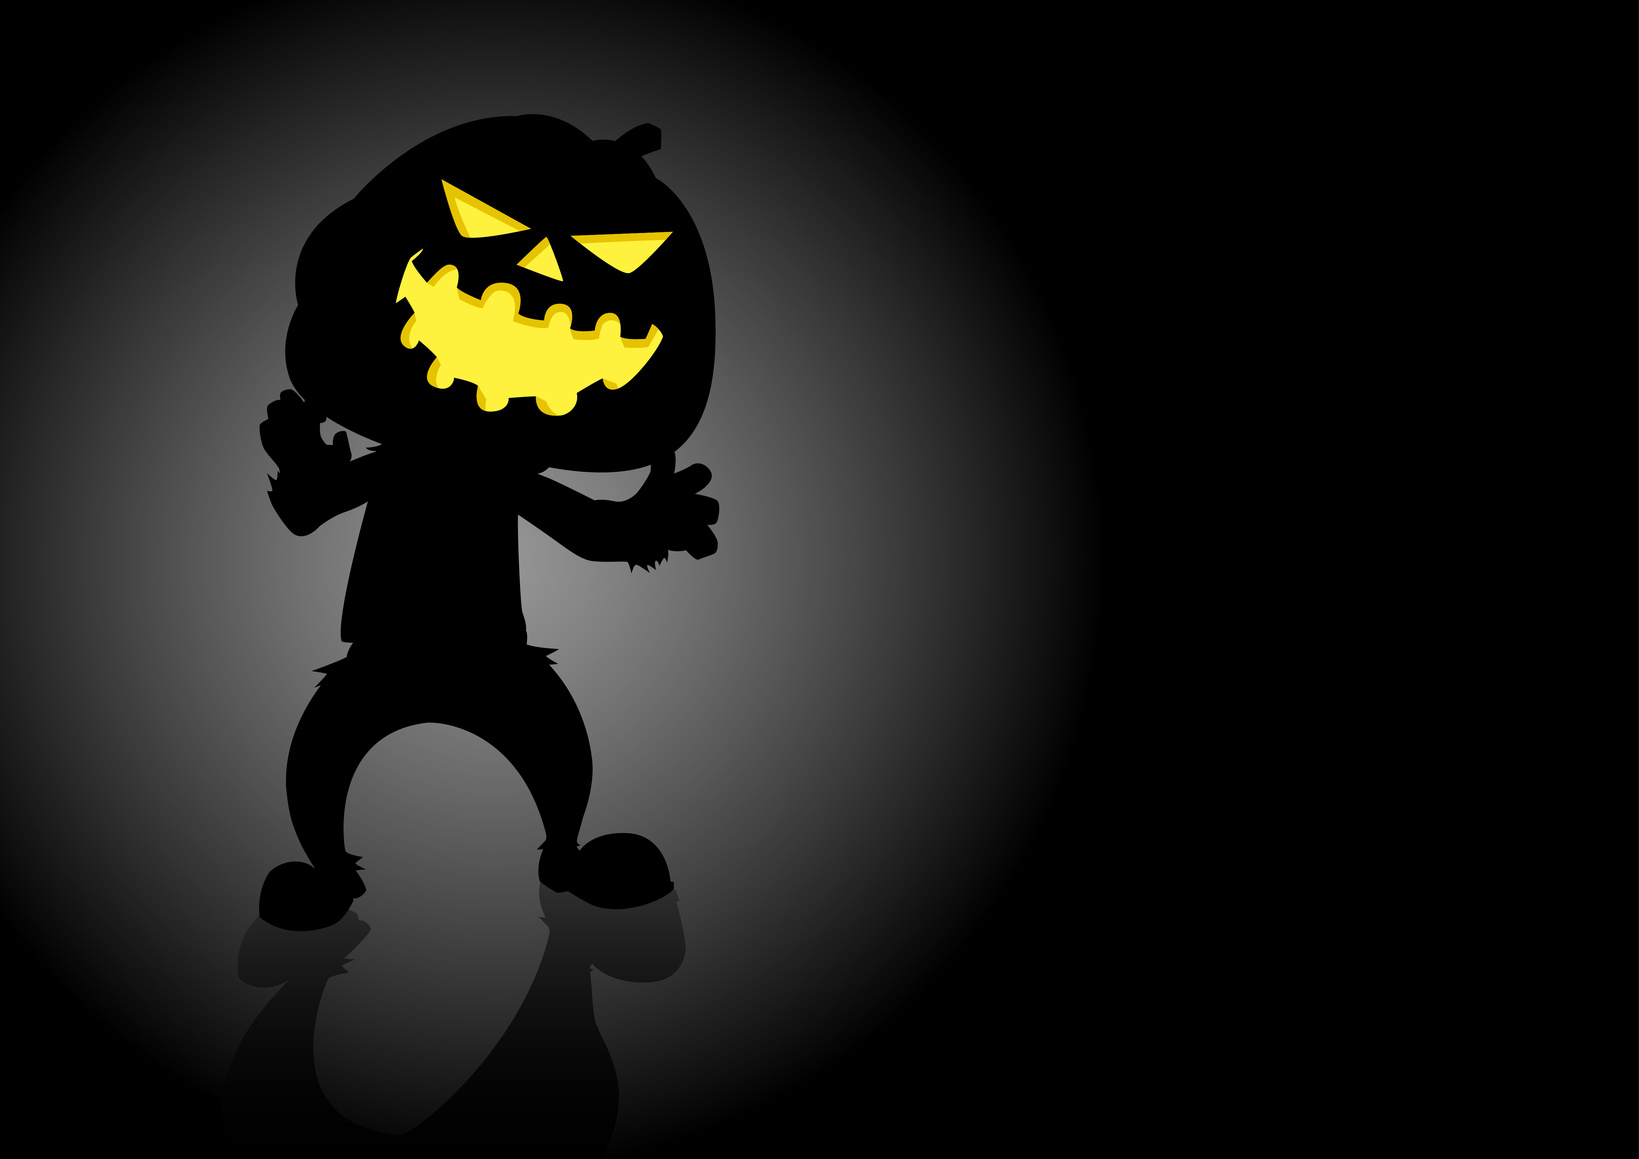 Halloween pumpkin or Jack O'Lantern on dark background